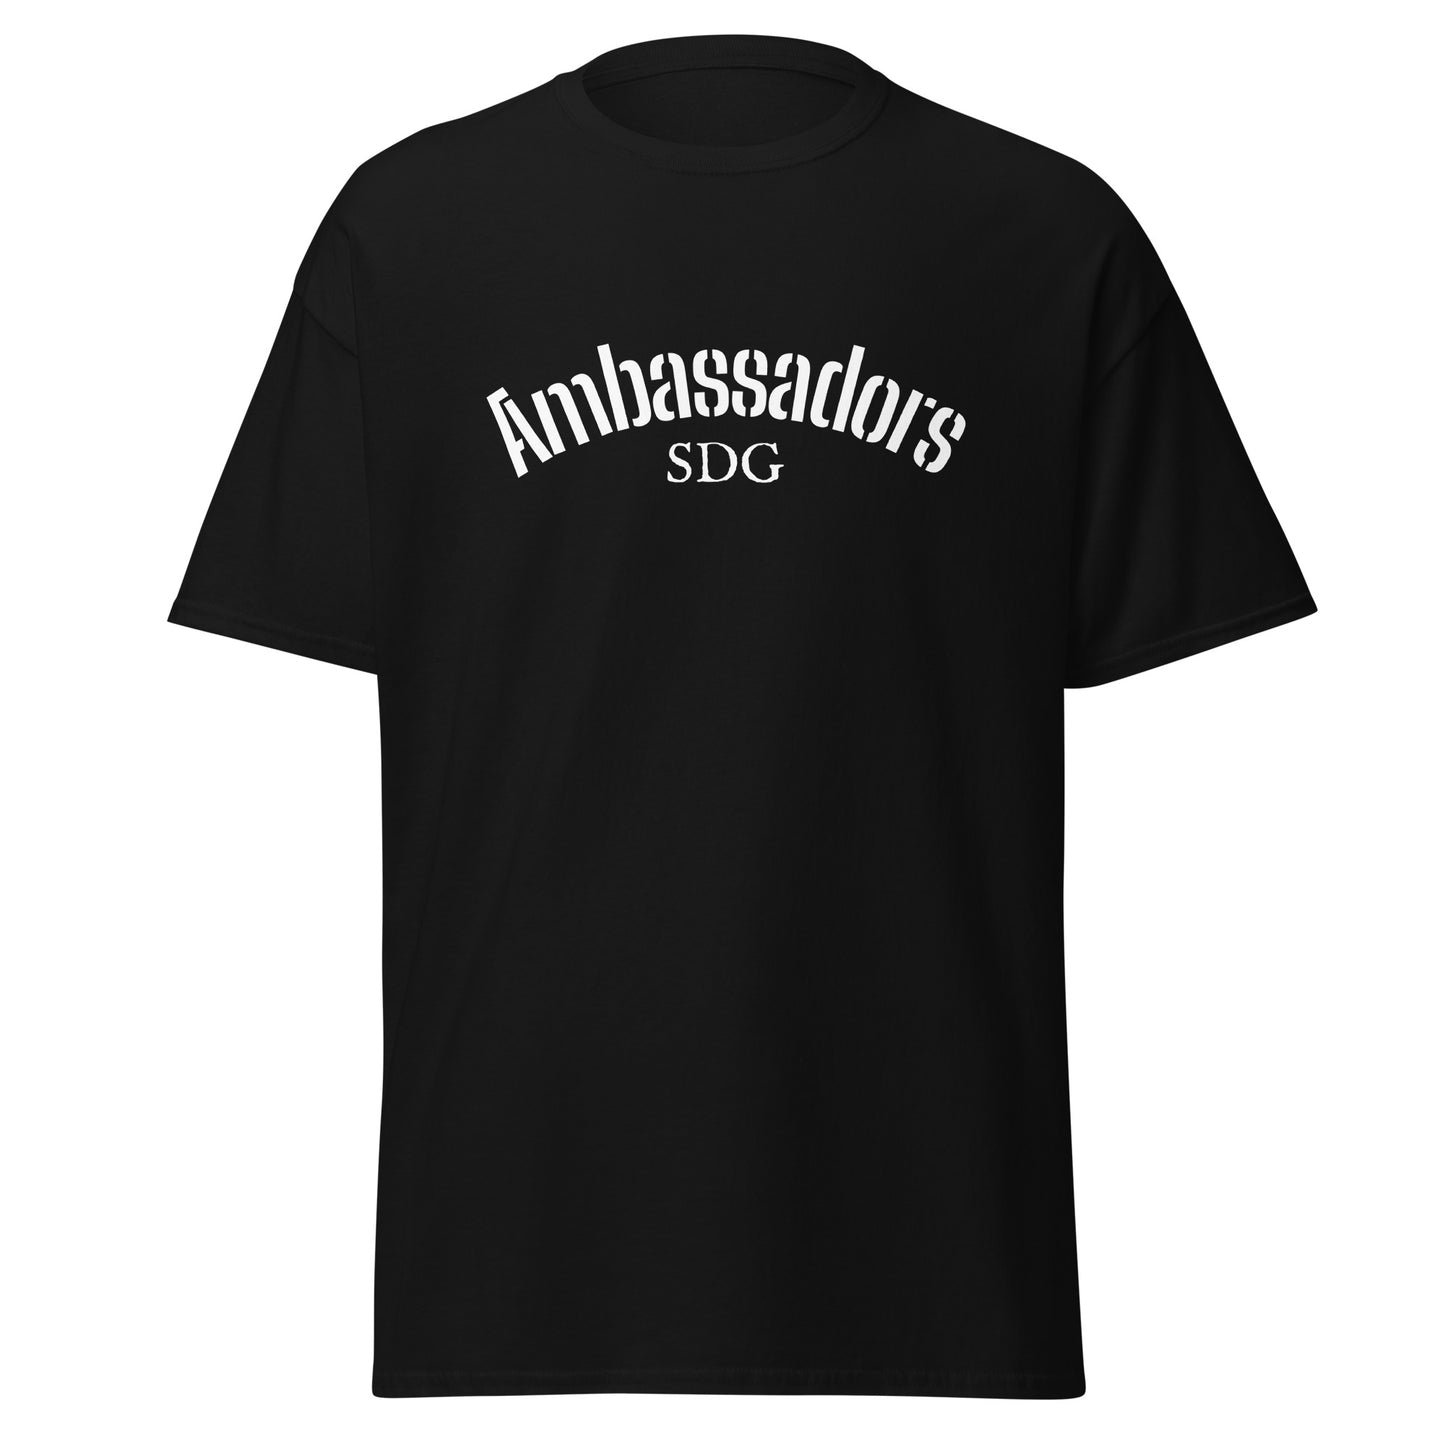 Ambassadors SDG T-Shirt